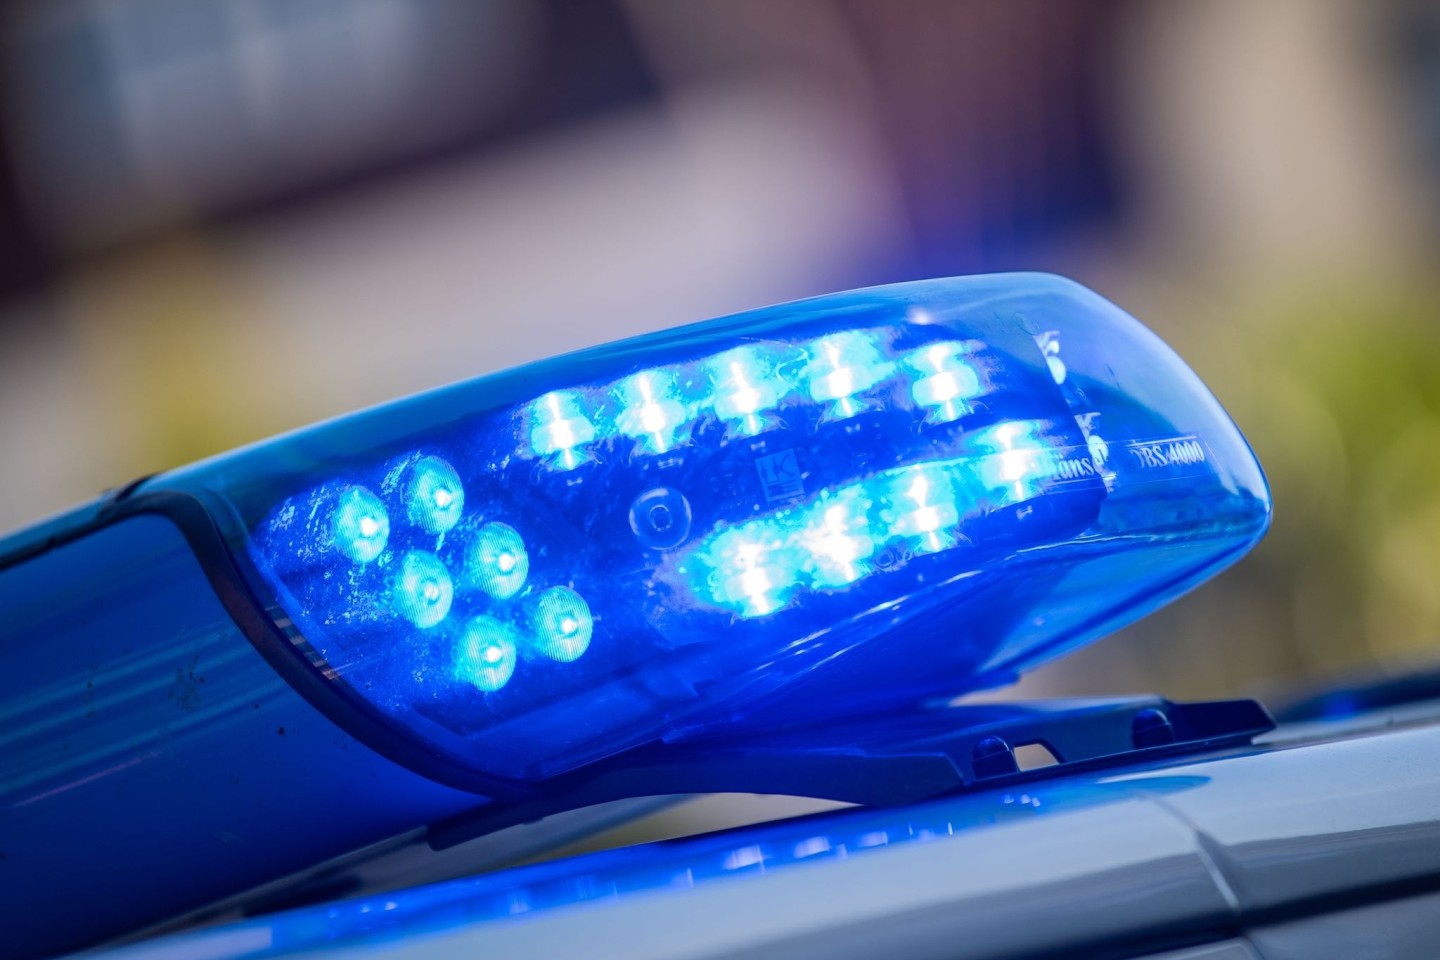 Die Polizei fand eine Frau mit Stichverletzungen in einer Wohnung in Berlin-Spandau. (Symbolbild)